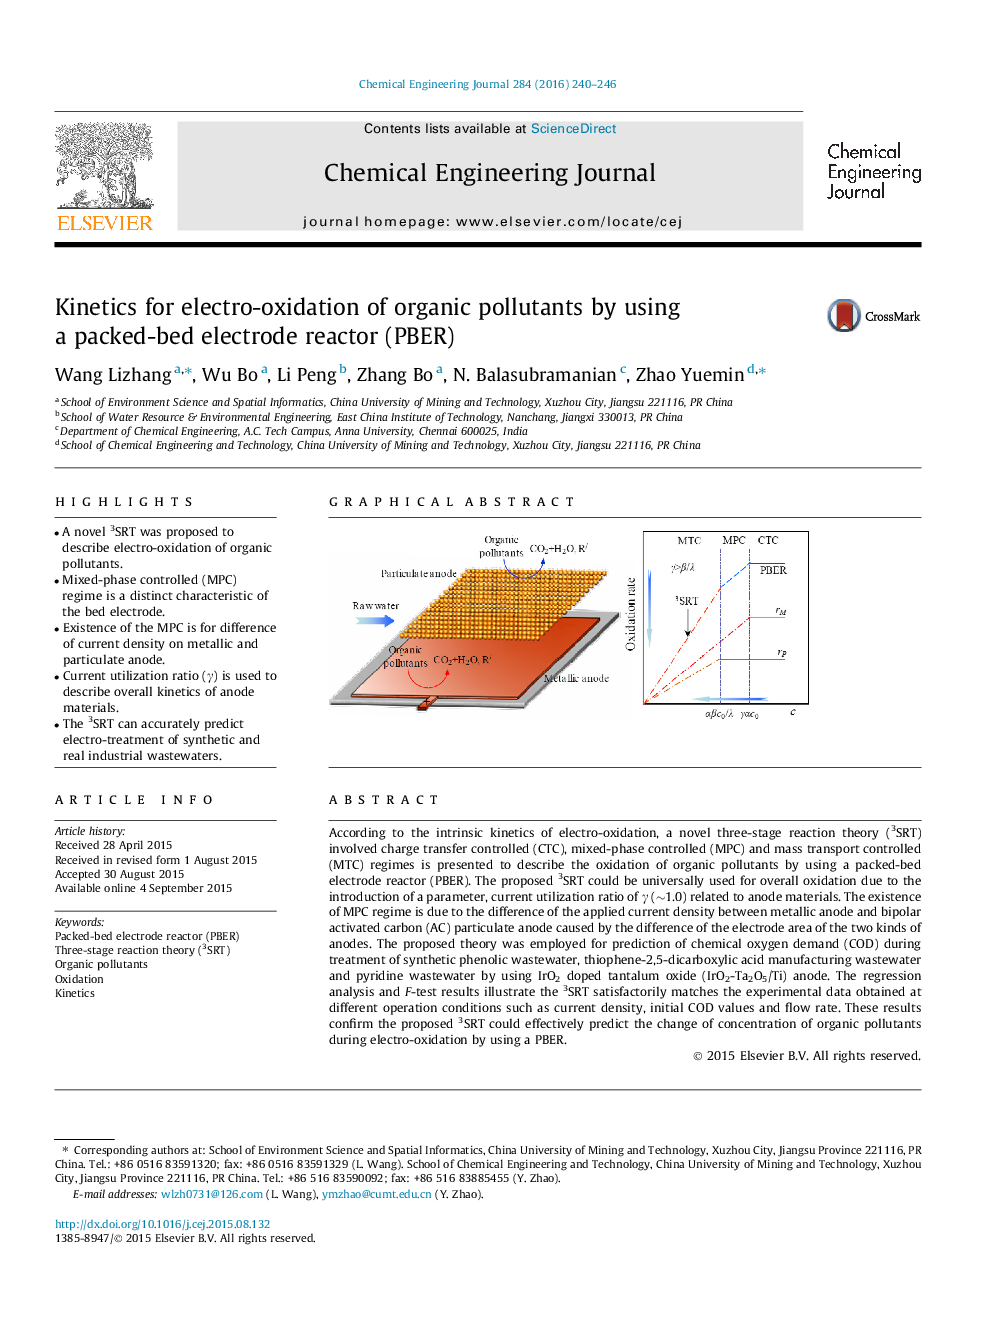 سینتیک برای الکترو اکسیداسیون آلاینده های آلی با استفاده از یک راکتور الکترود بسته بندی شده (PBER)